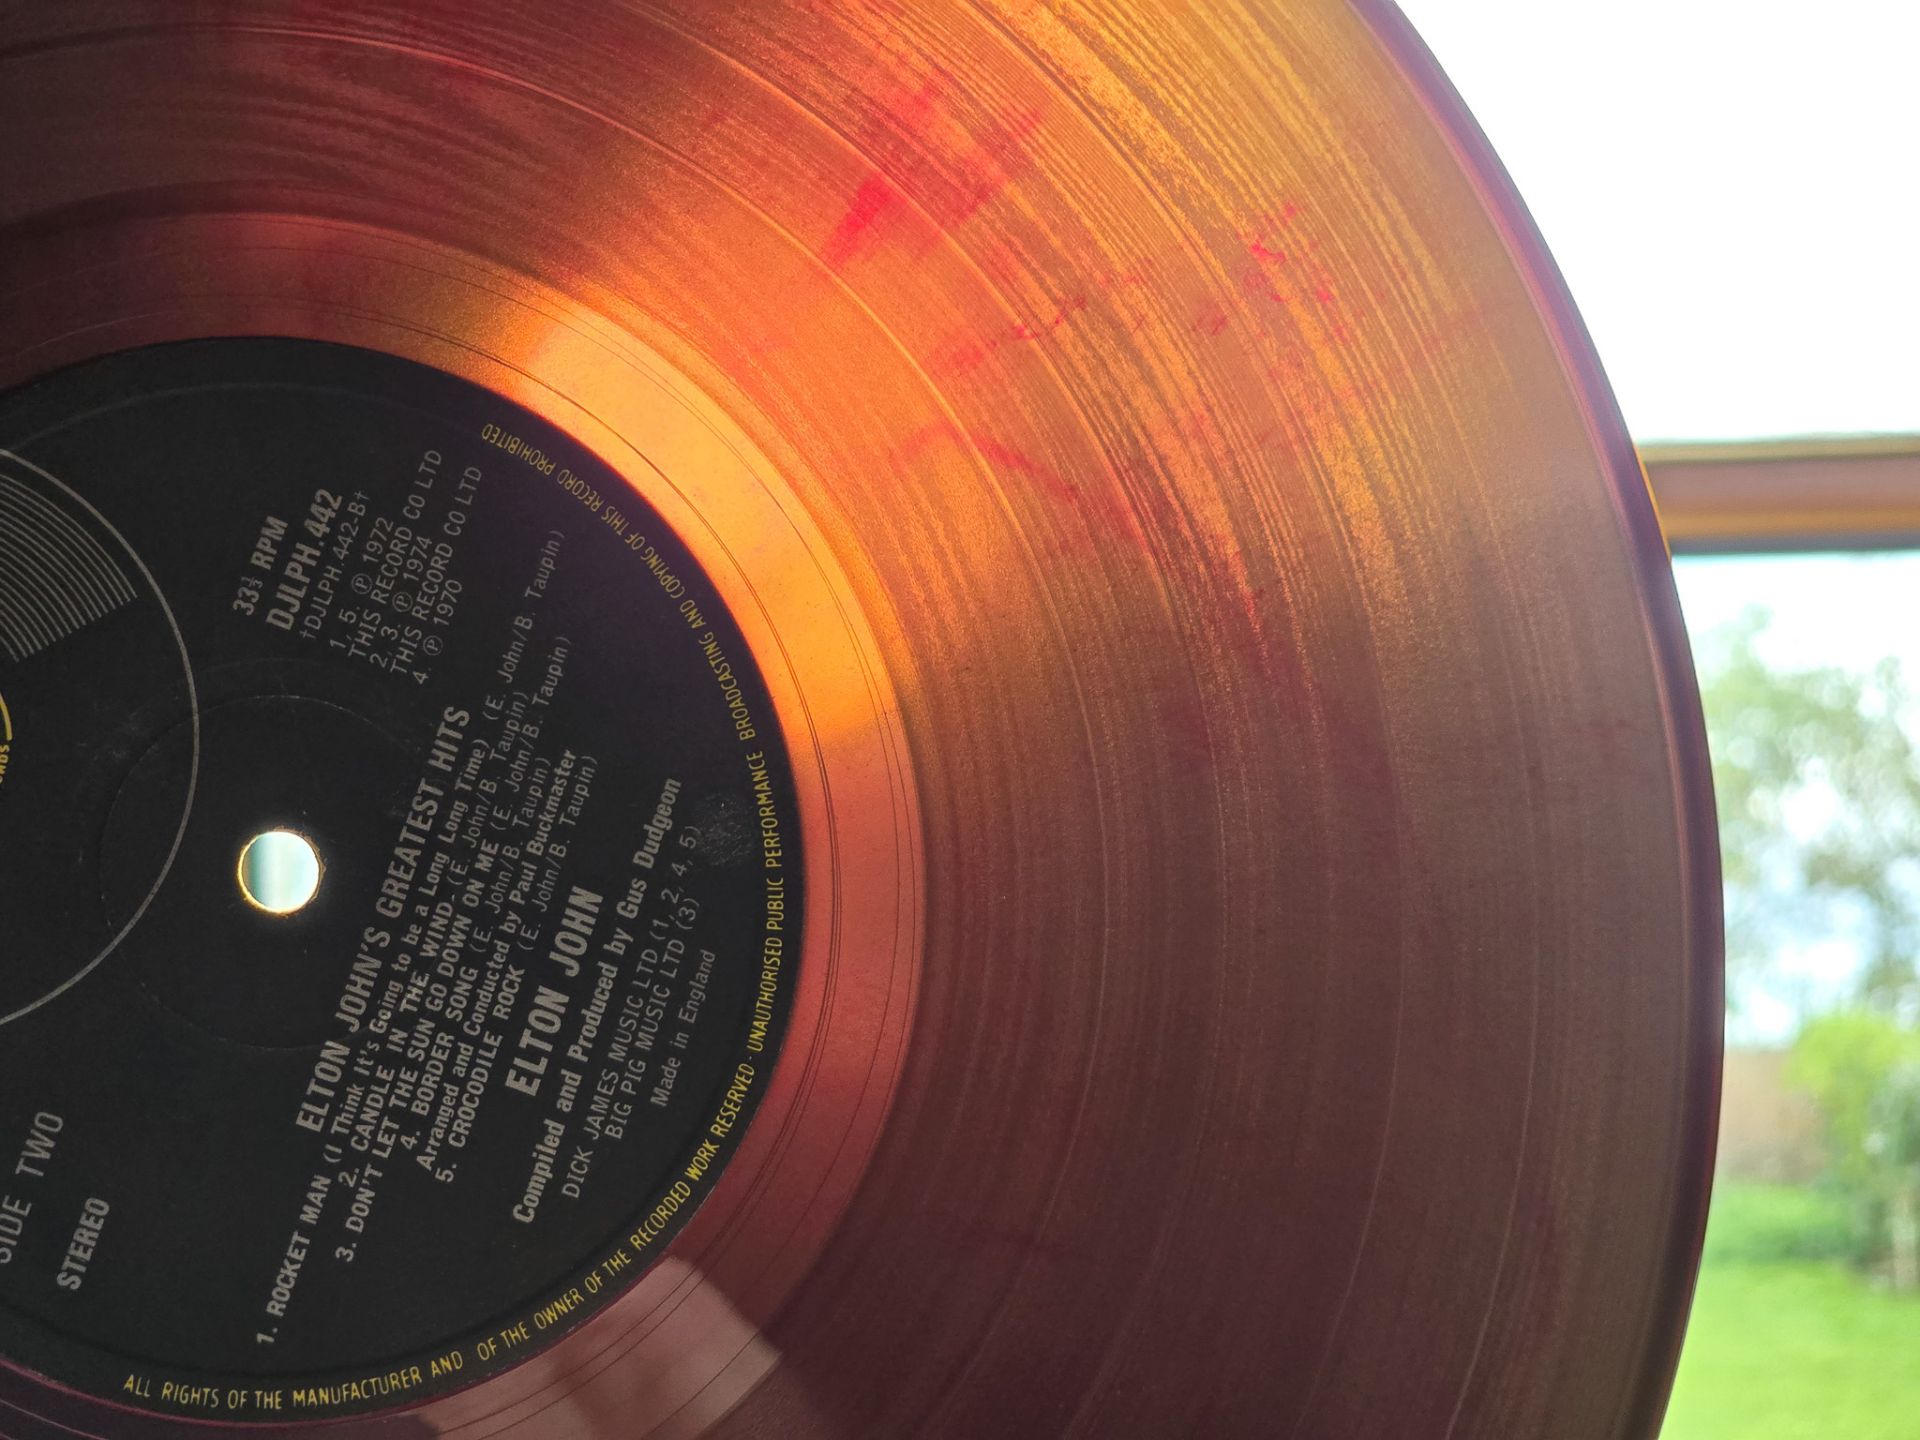 Elton John – Greatest Hits Red Splatter UK 1st issue vinyl LP - Image 3 of 9